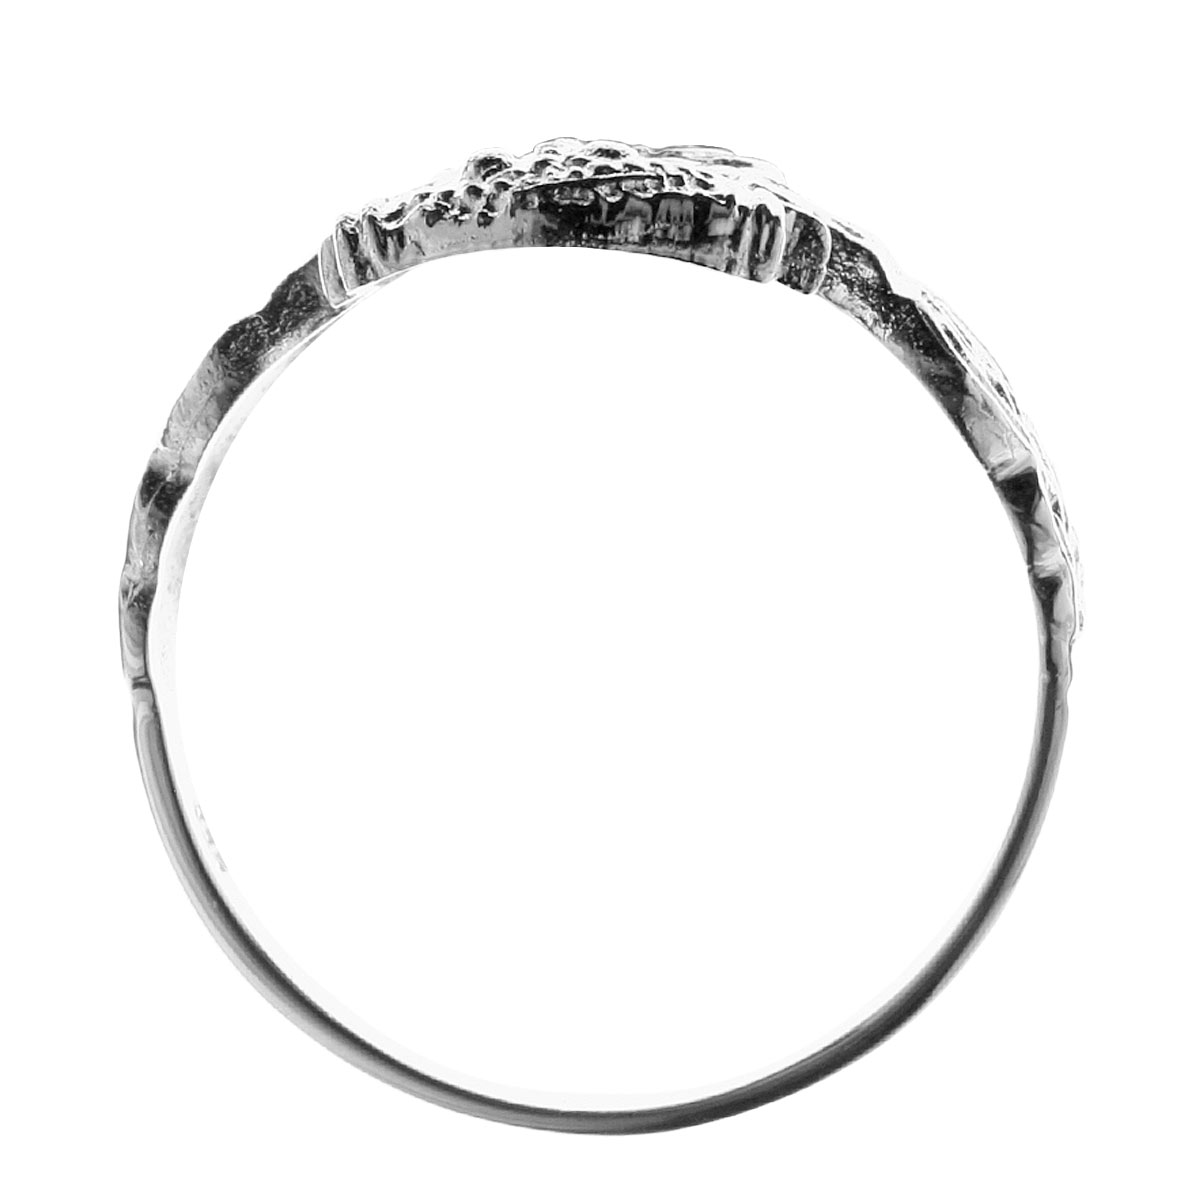 Ring Hiddensee Silber 925/000, -Größe wählbar-